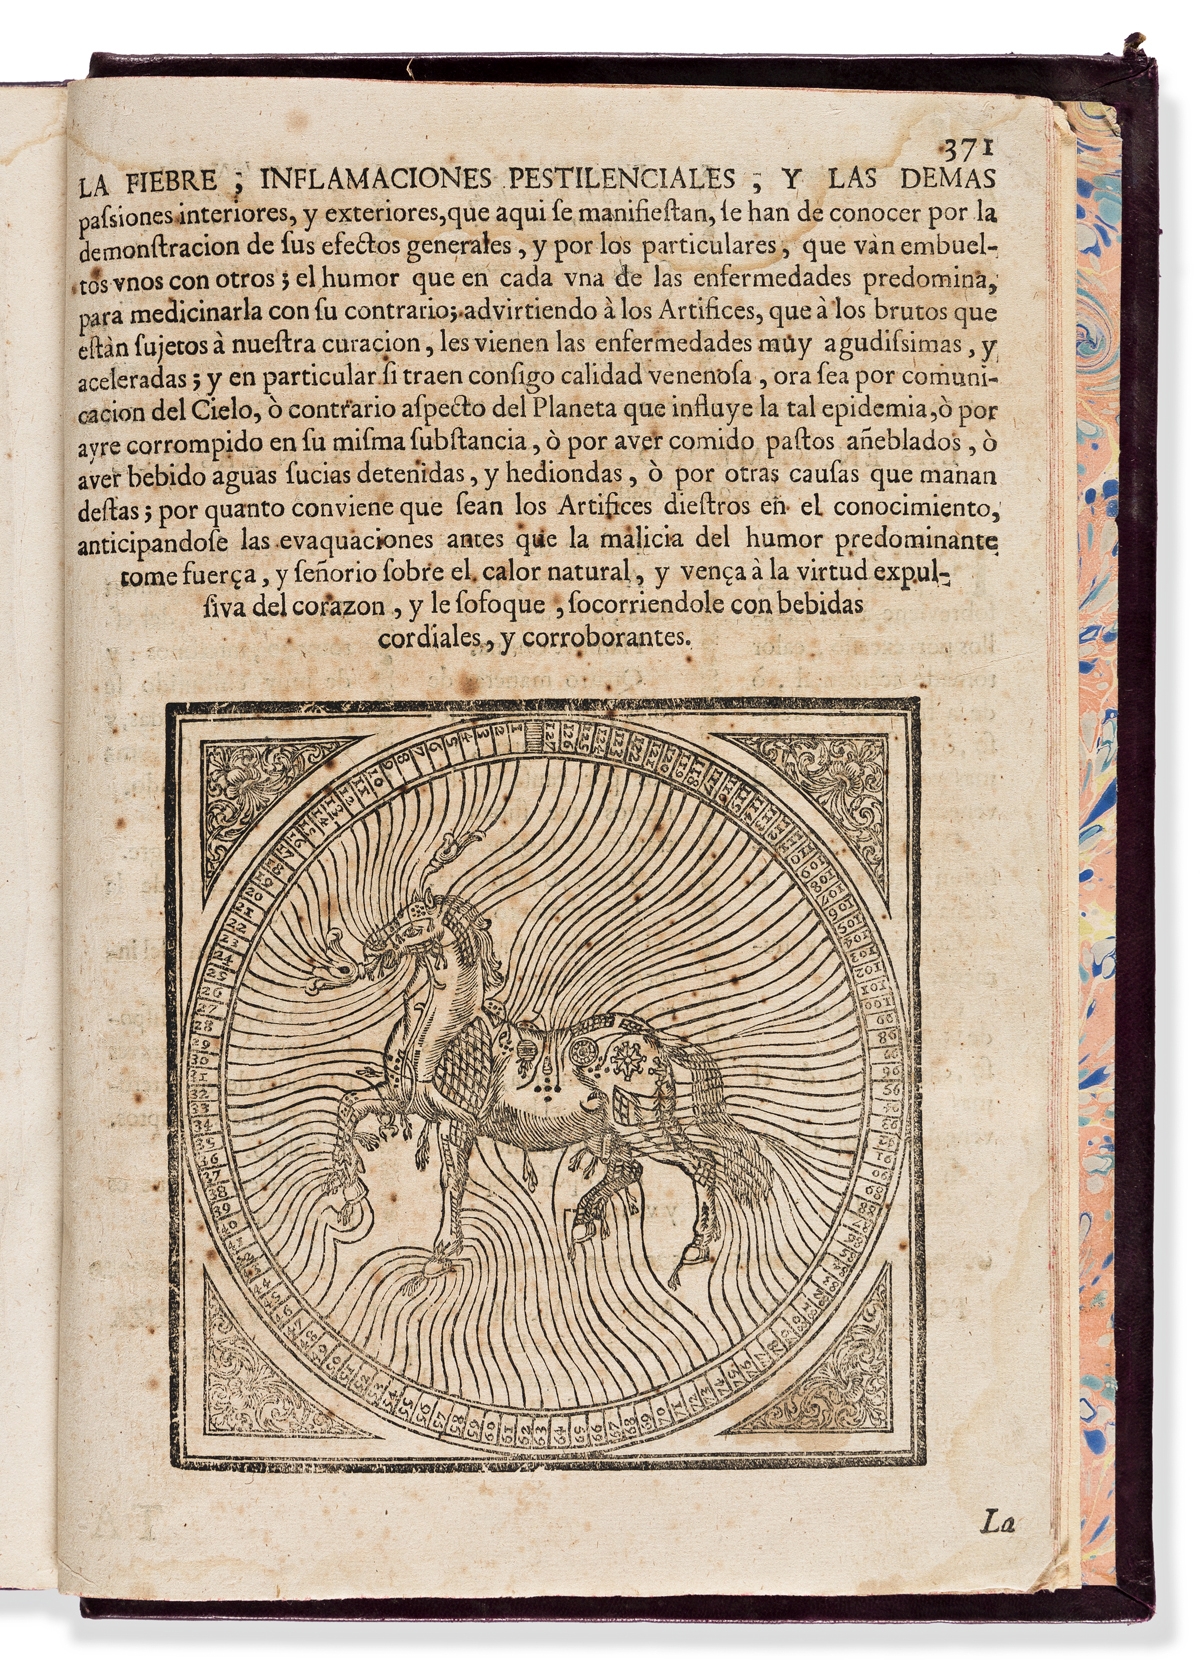 Arredondo, Martín (1598-1670) Obras de Albeyteria, Primera, Segunda, y Tercera Parte Aora Nuevamente Corregidas, y Añadidas.